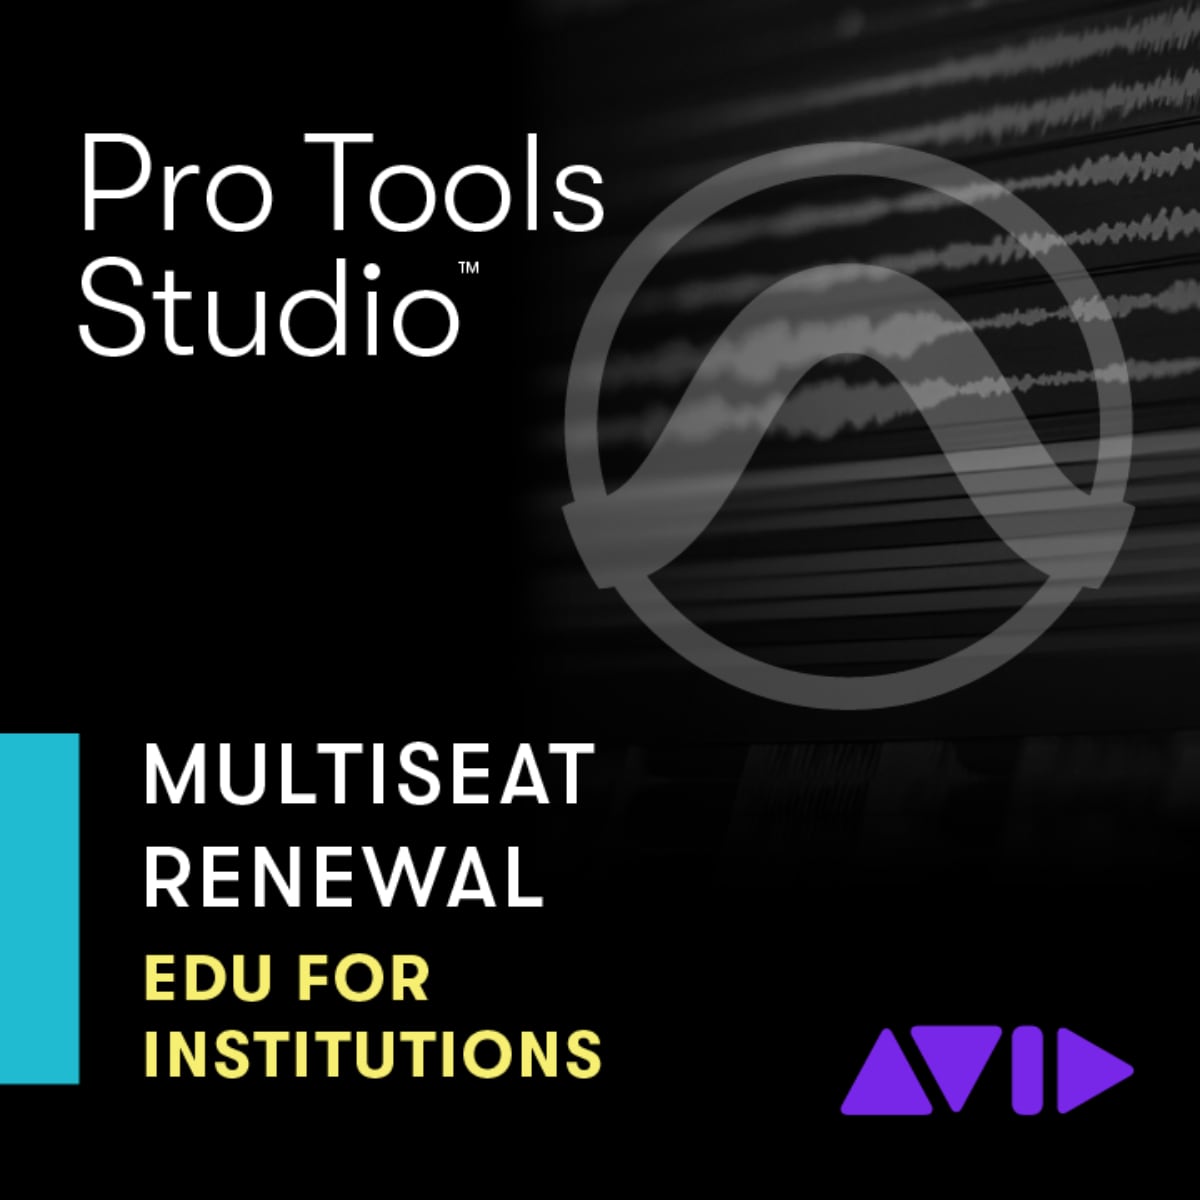 Avid Pro Tools Studio Multiseat License EDU Institution Renewal